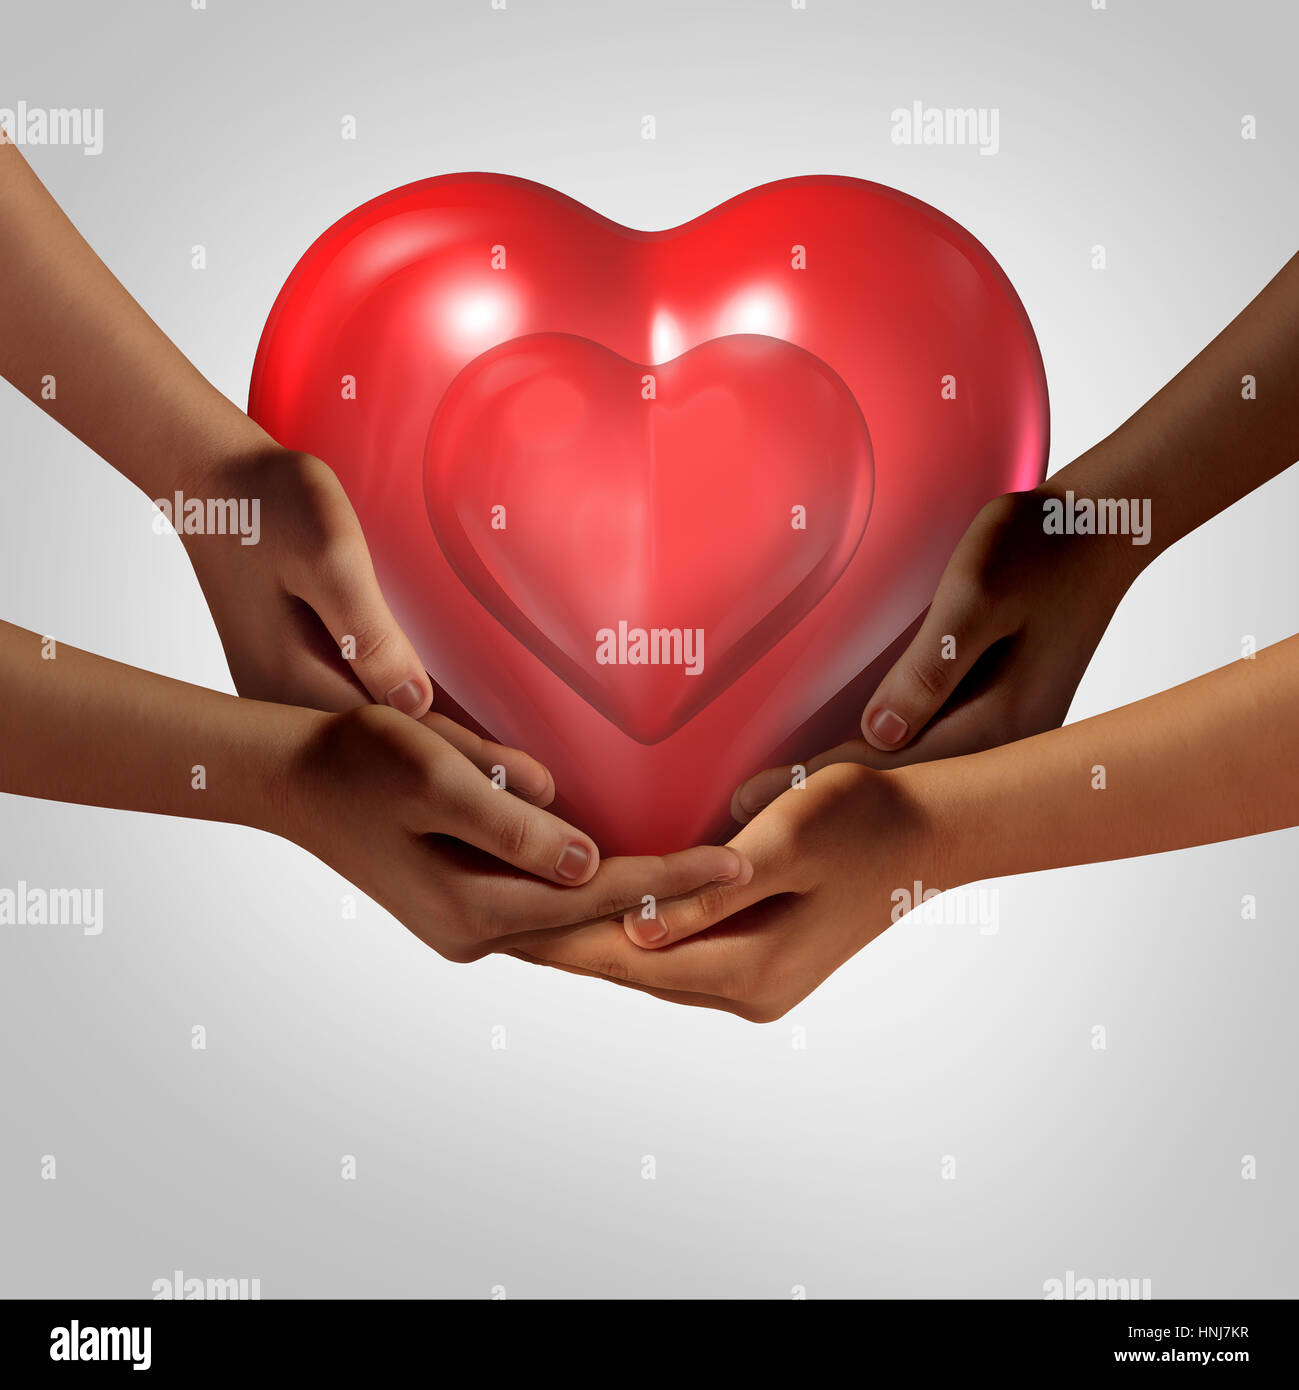 La société mondiale de l'amour et symbole de santé communautaire aussi diverses mains tenant un cœur rouge comme symbole pour s'occuper dans la société. Banque D'Images